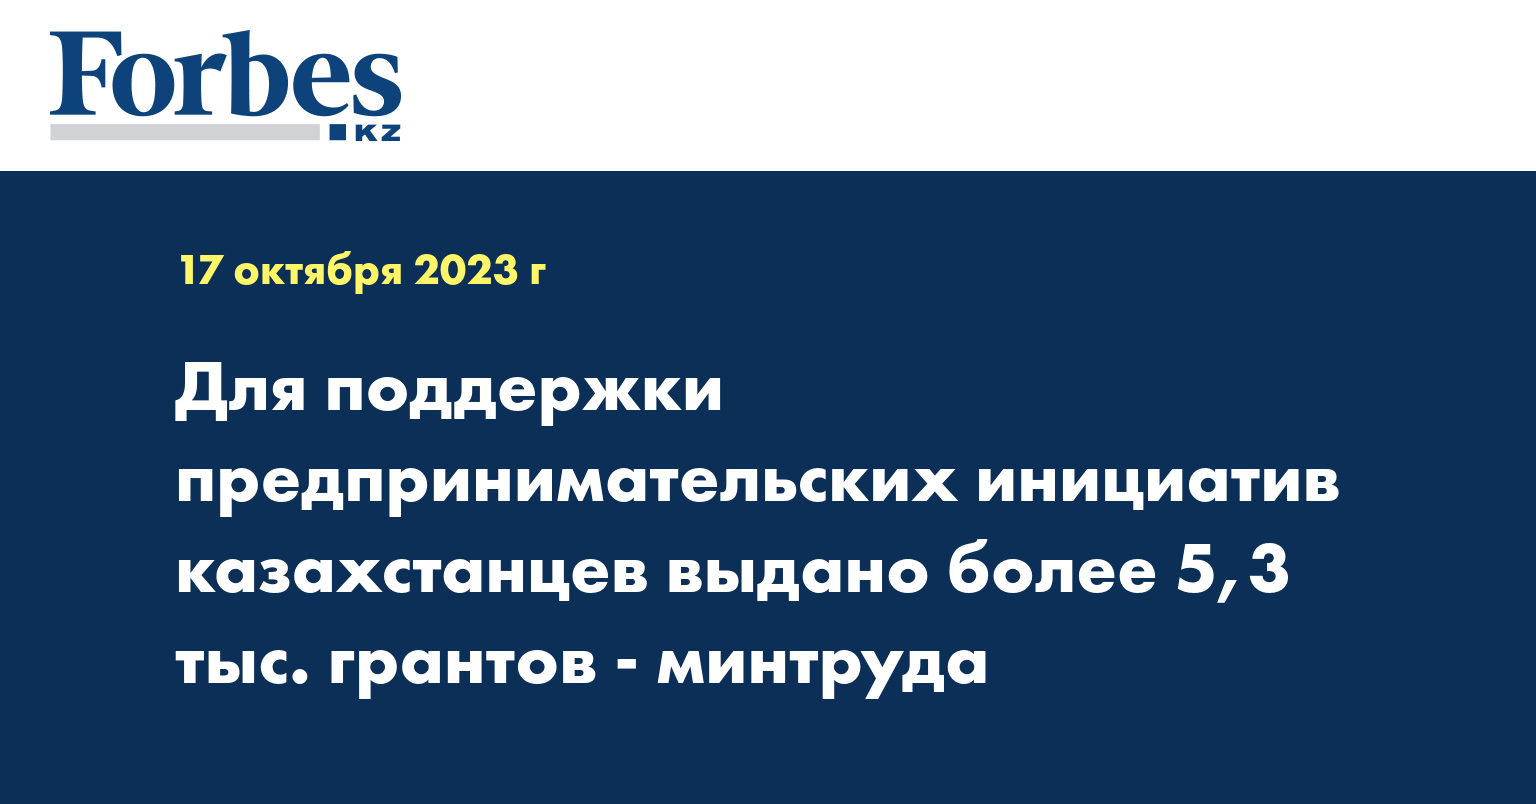 Для поддержки предпринимательских инициатив казахстанцев выдано более 5,3 тыс. грантов - минтруда